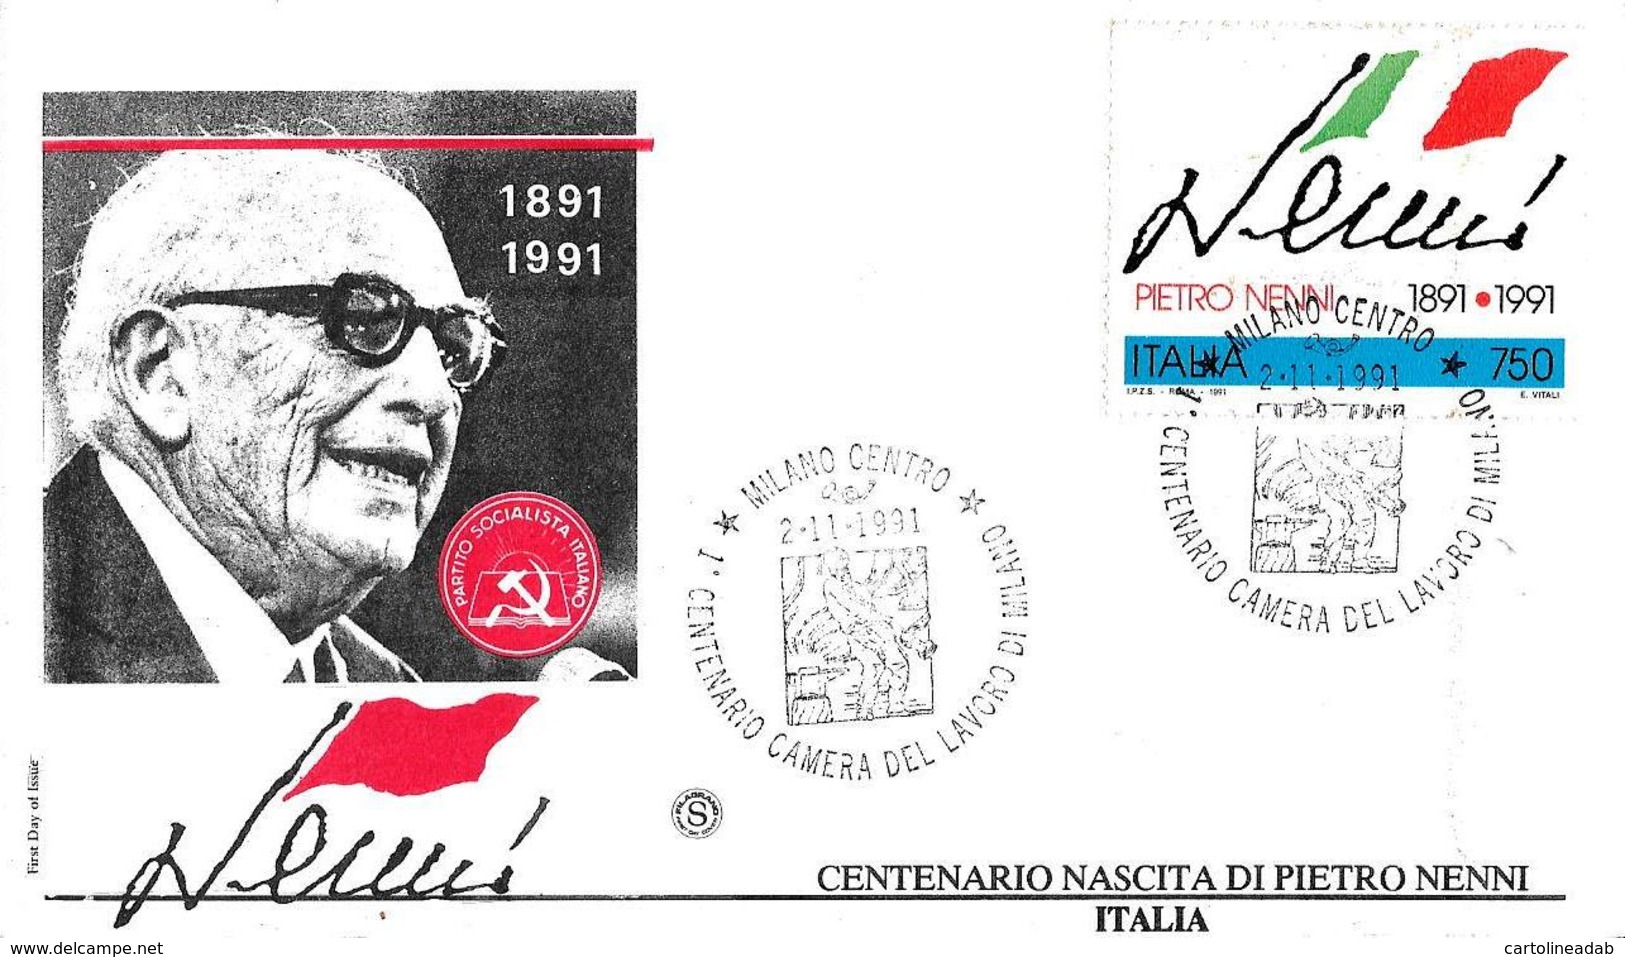 [MD4566] FDC - PIETRO NENNI - POLITICA - CENTENARIO NASCITA 1891 - 1991 - CON ANNULLO 2.11.1991 - PERFETTA - NV - FDC